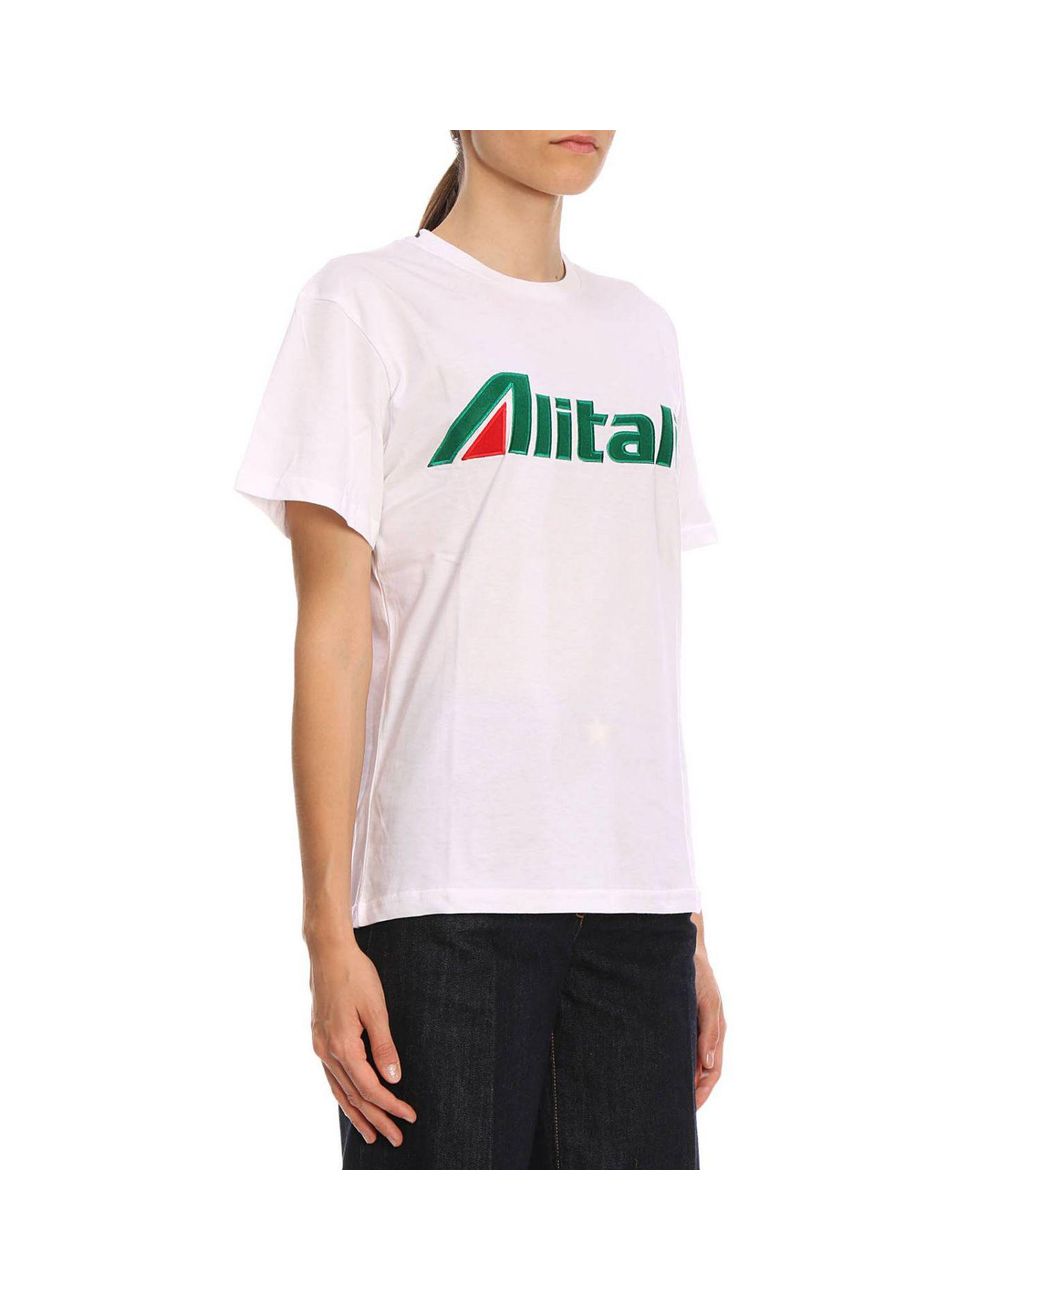 Alberta Ferretti "alitalia" Embroidered Cotton Jersey T-shirt in White |  Lyst